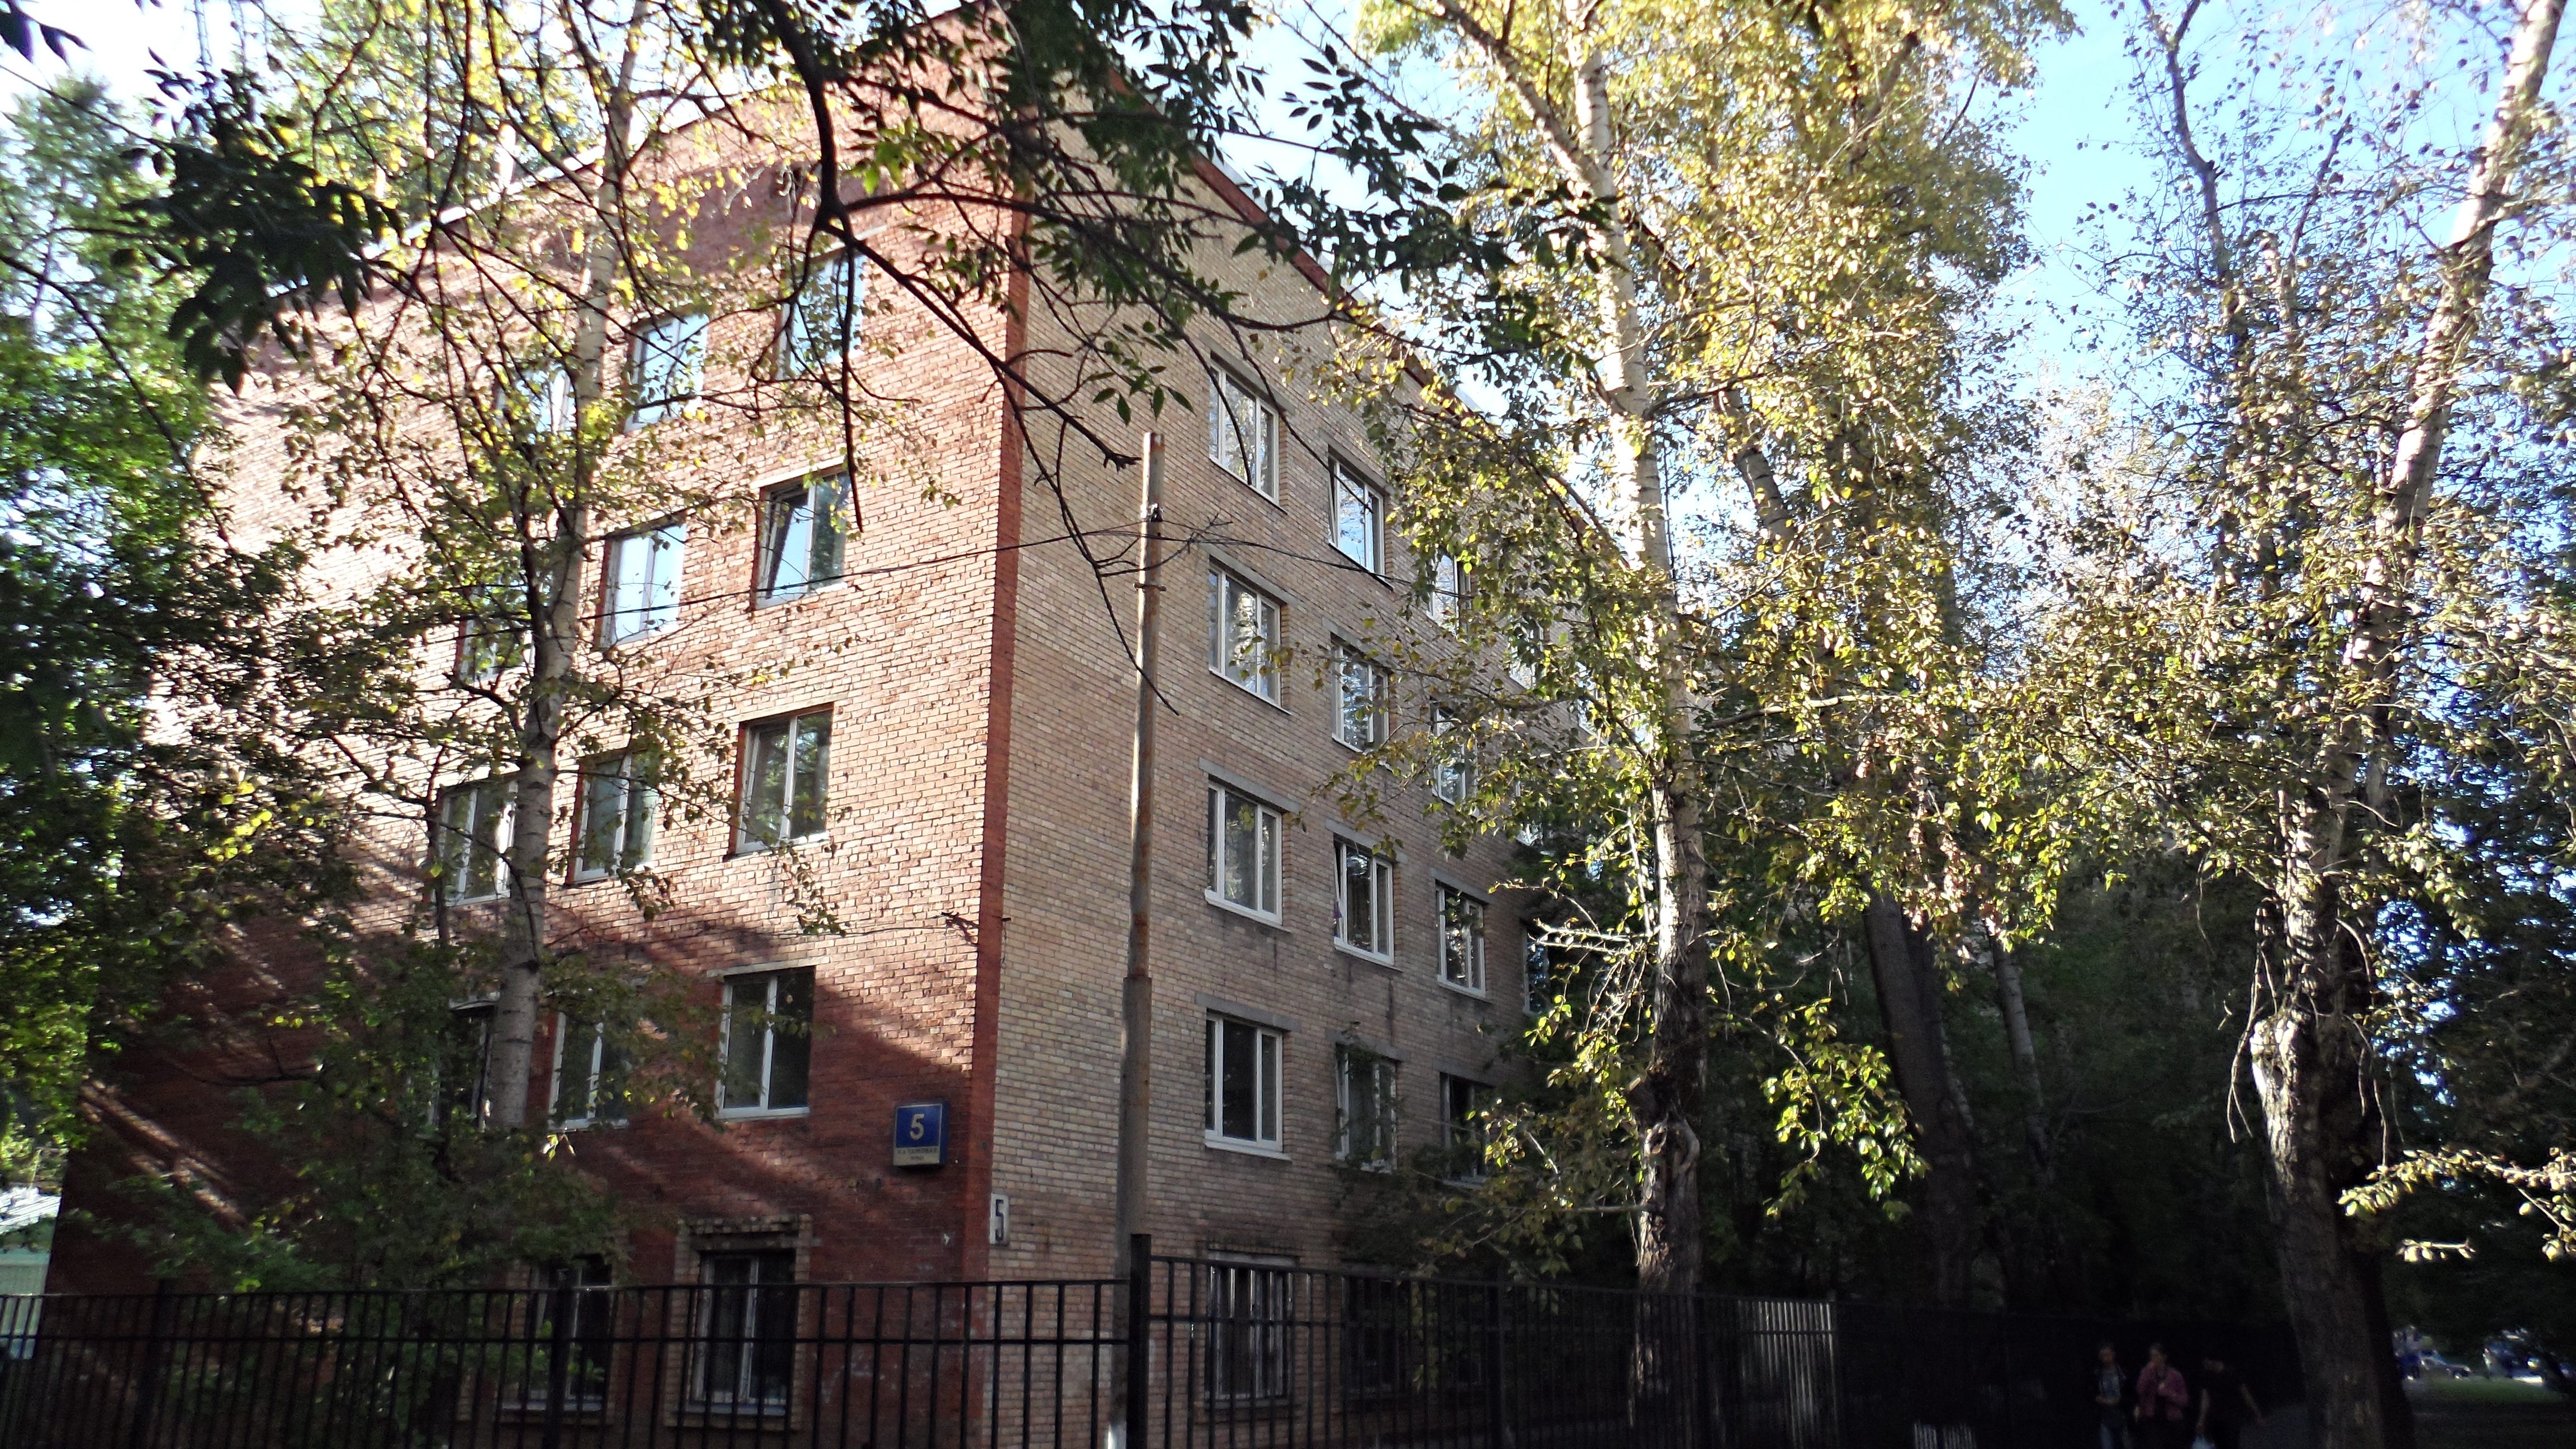 11 Парковая 5 общежитие Сеченова